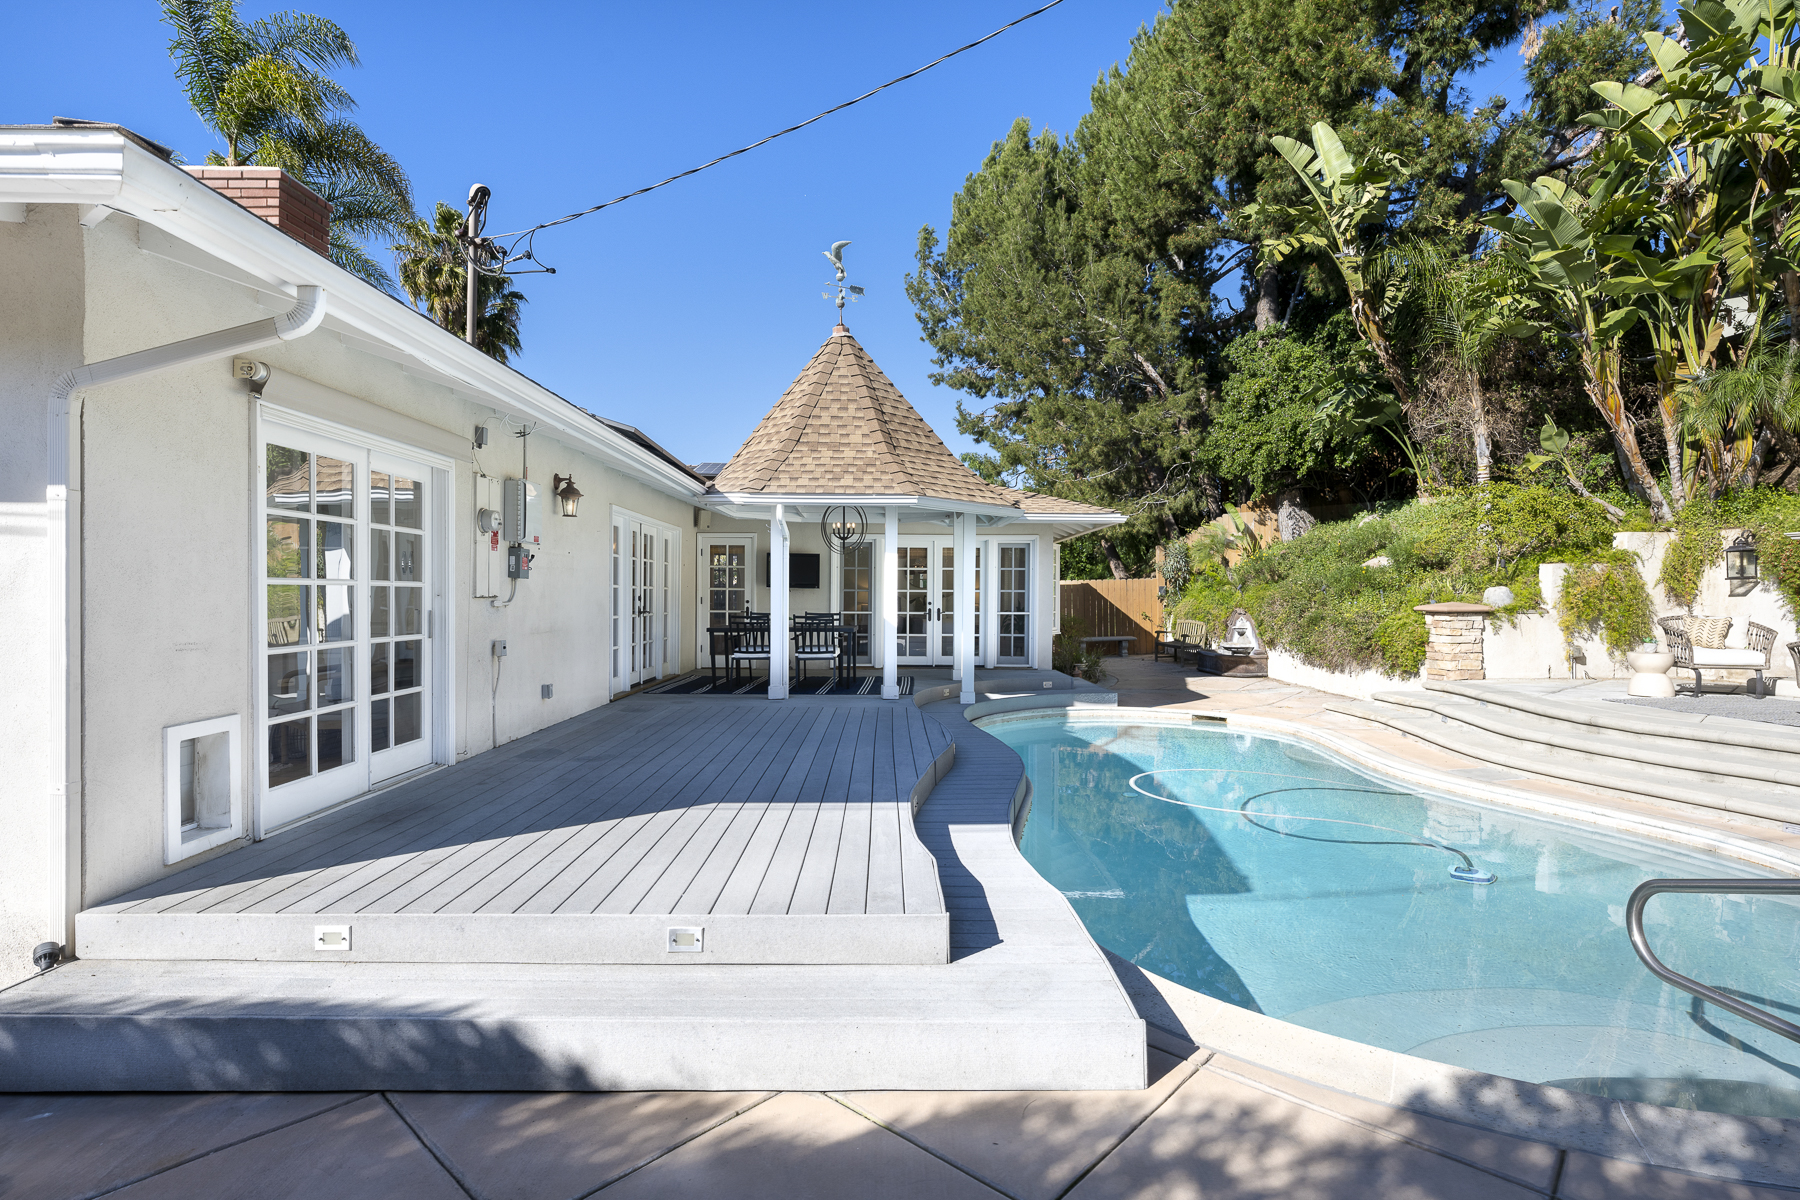 806 N. Adlena Drive, Fullerton, CA 92833: Exterior shot of pool and patio deck.